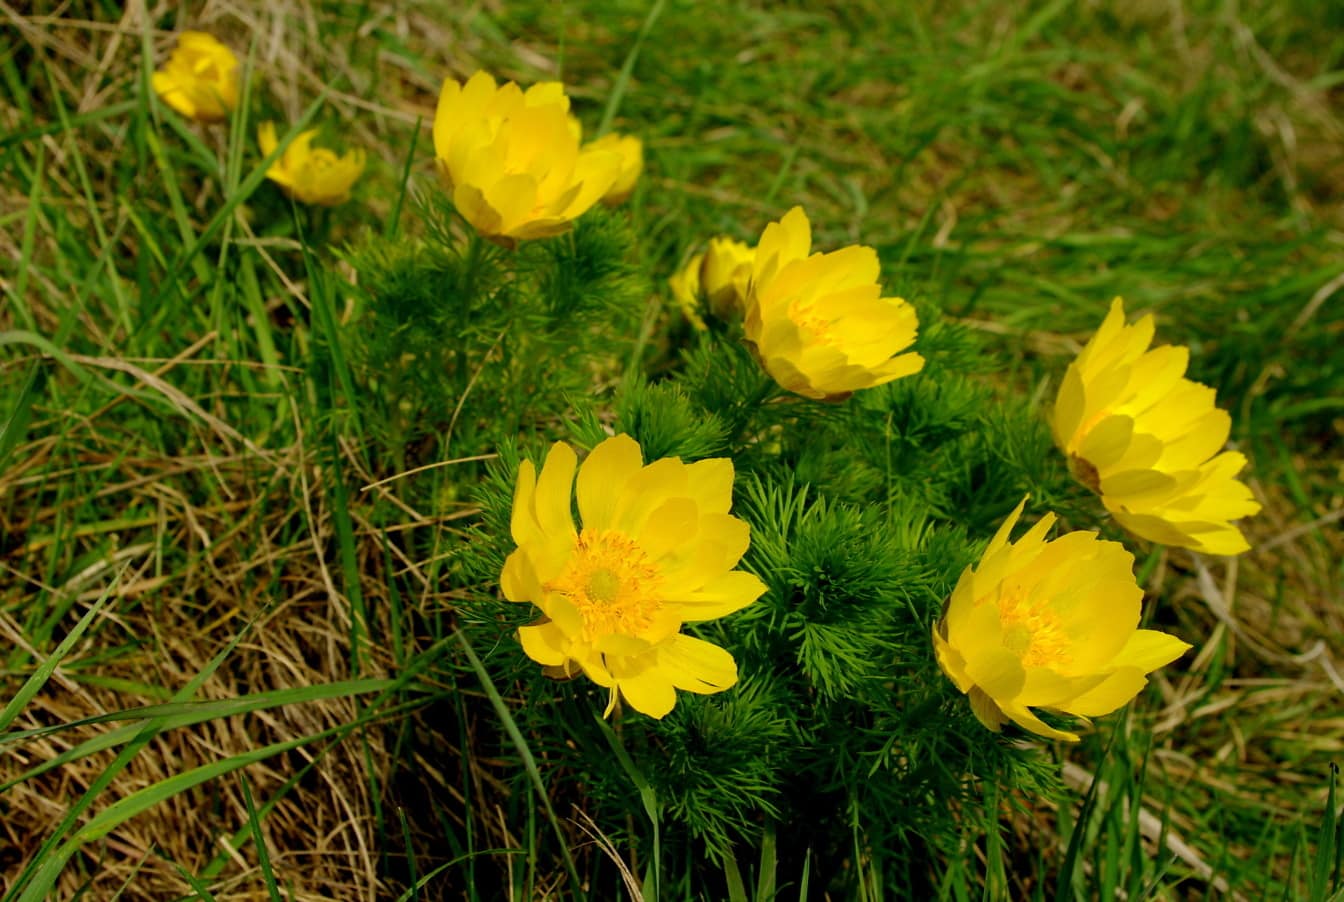 Żółtawe płatki oka bażanta (Adonis vernalis) polnego kwiatu w roślinach trawiastych